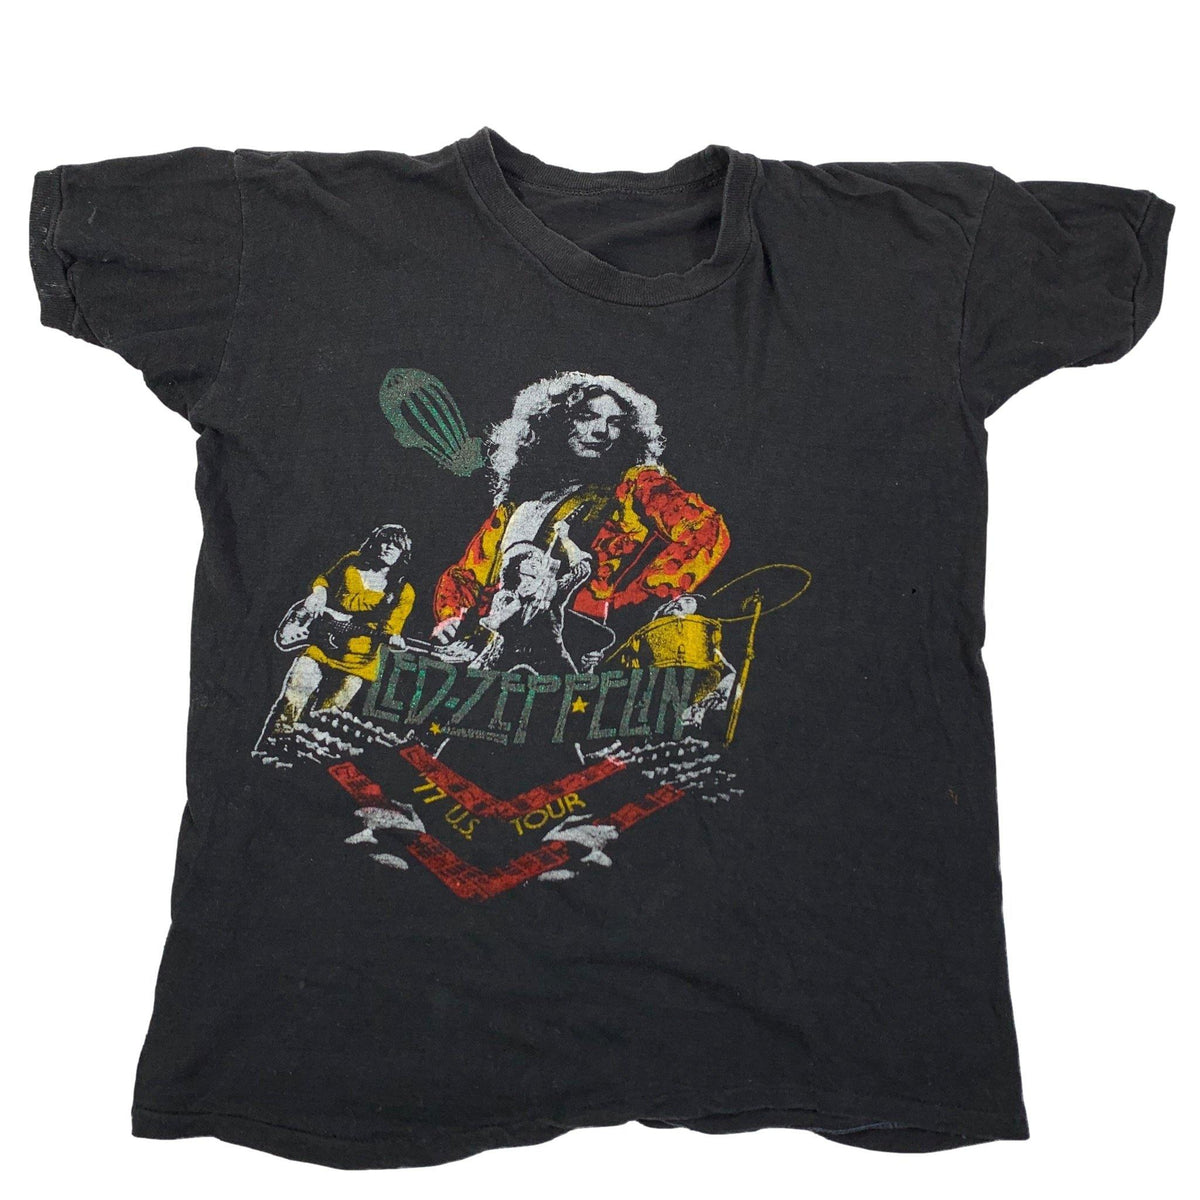 Vintage orignal Led Zeppelin 1977 tour shirt